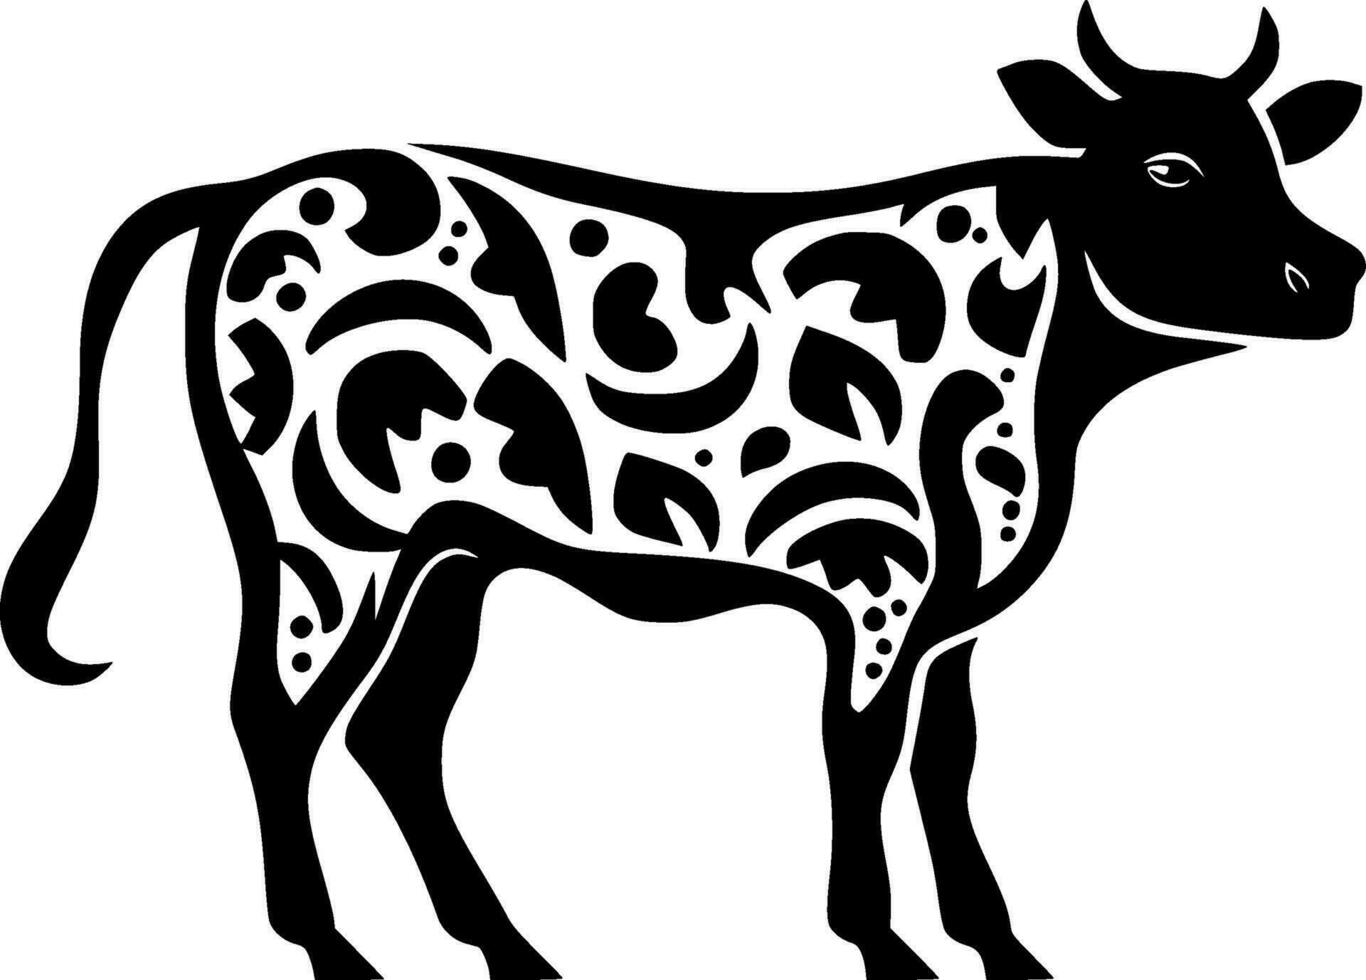 Kuh - - minimalistisch und eben Logo - - Vektor Illustration